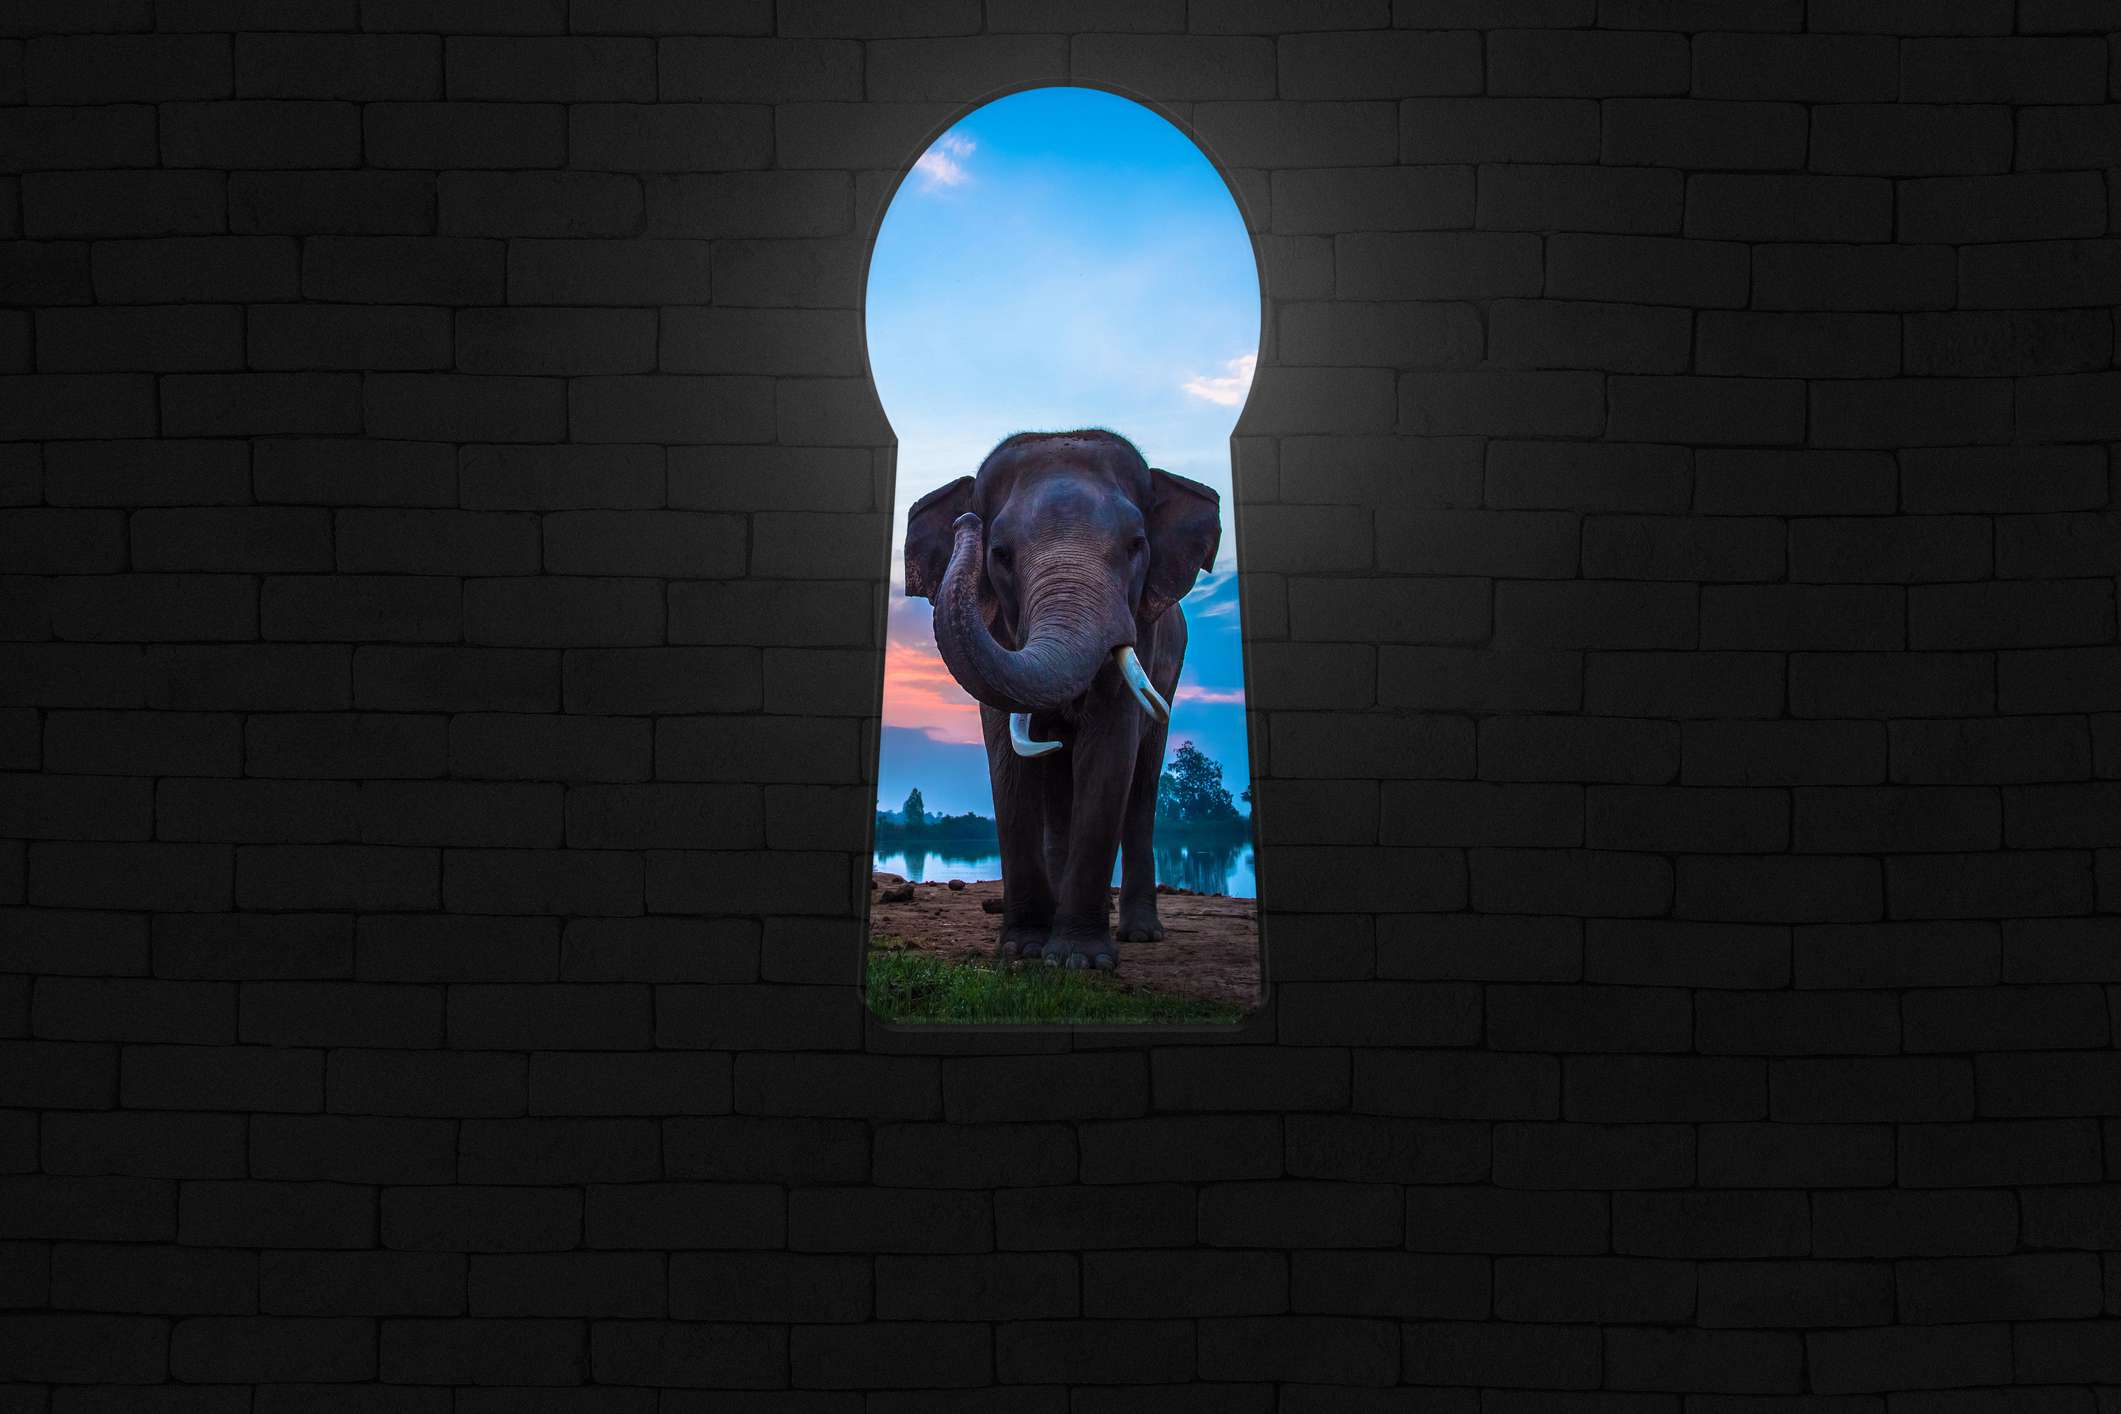 Slon je viděn skrz otvor ve tvaru klíčové dírky v cihlové zdi